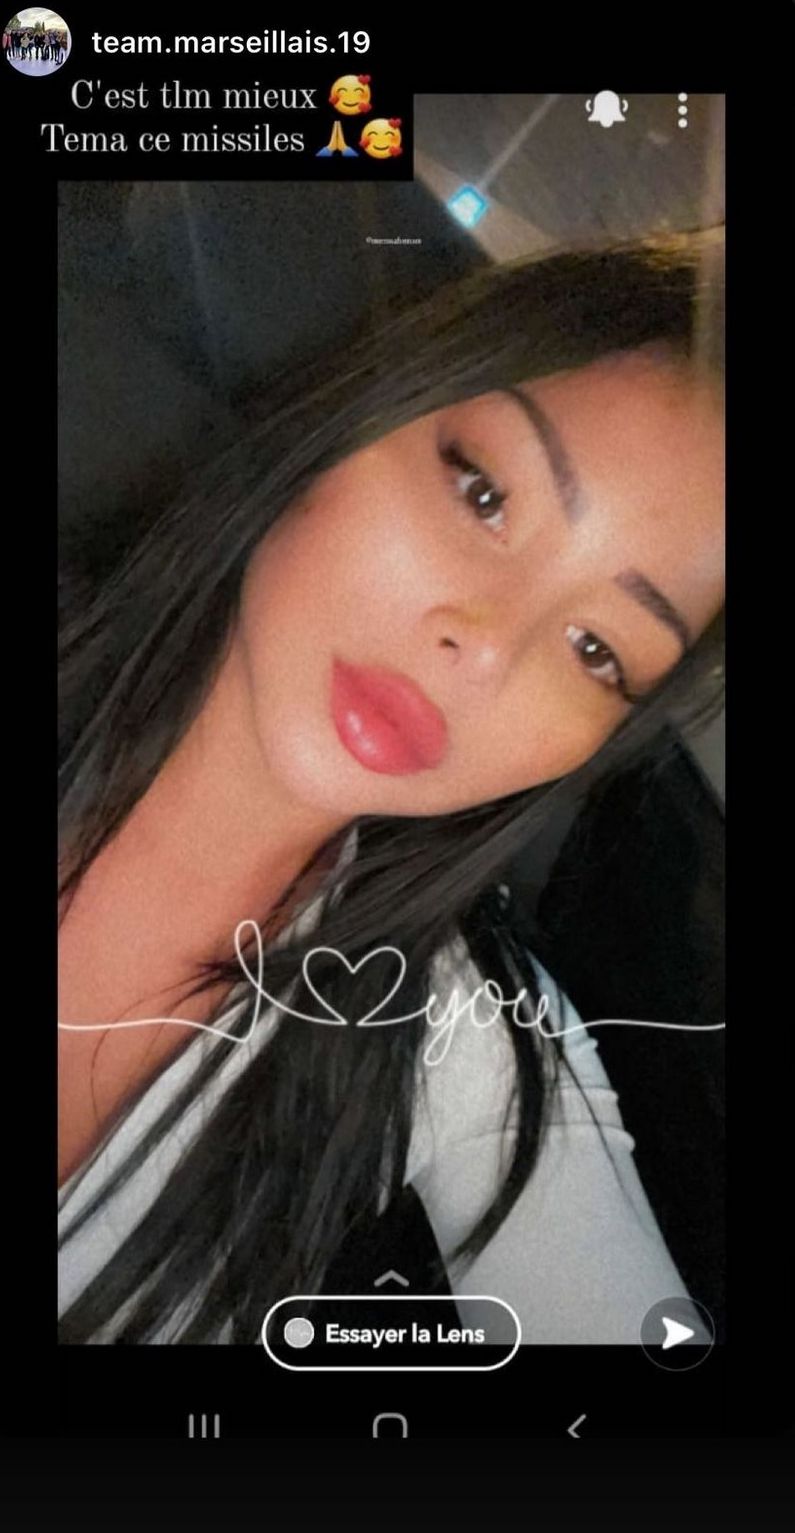  Maeva Ghennam dévoile ses nouvelles lèvres @Instagram